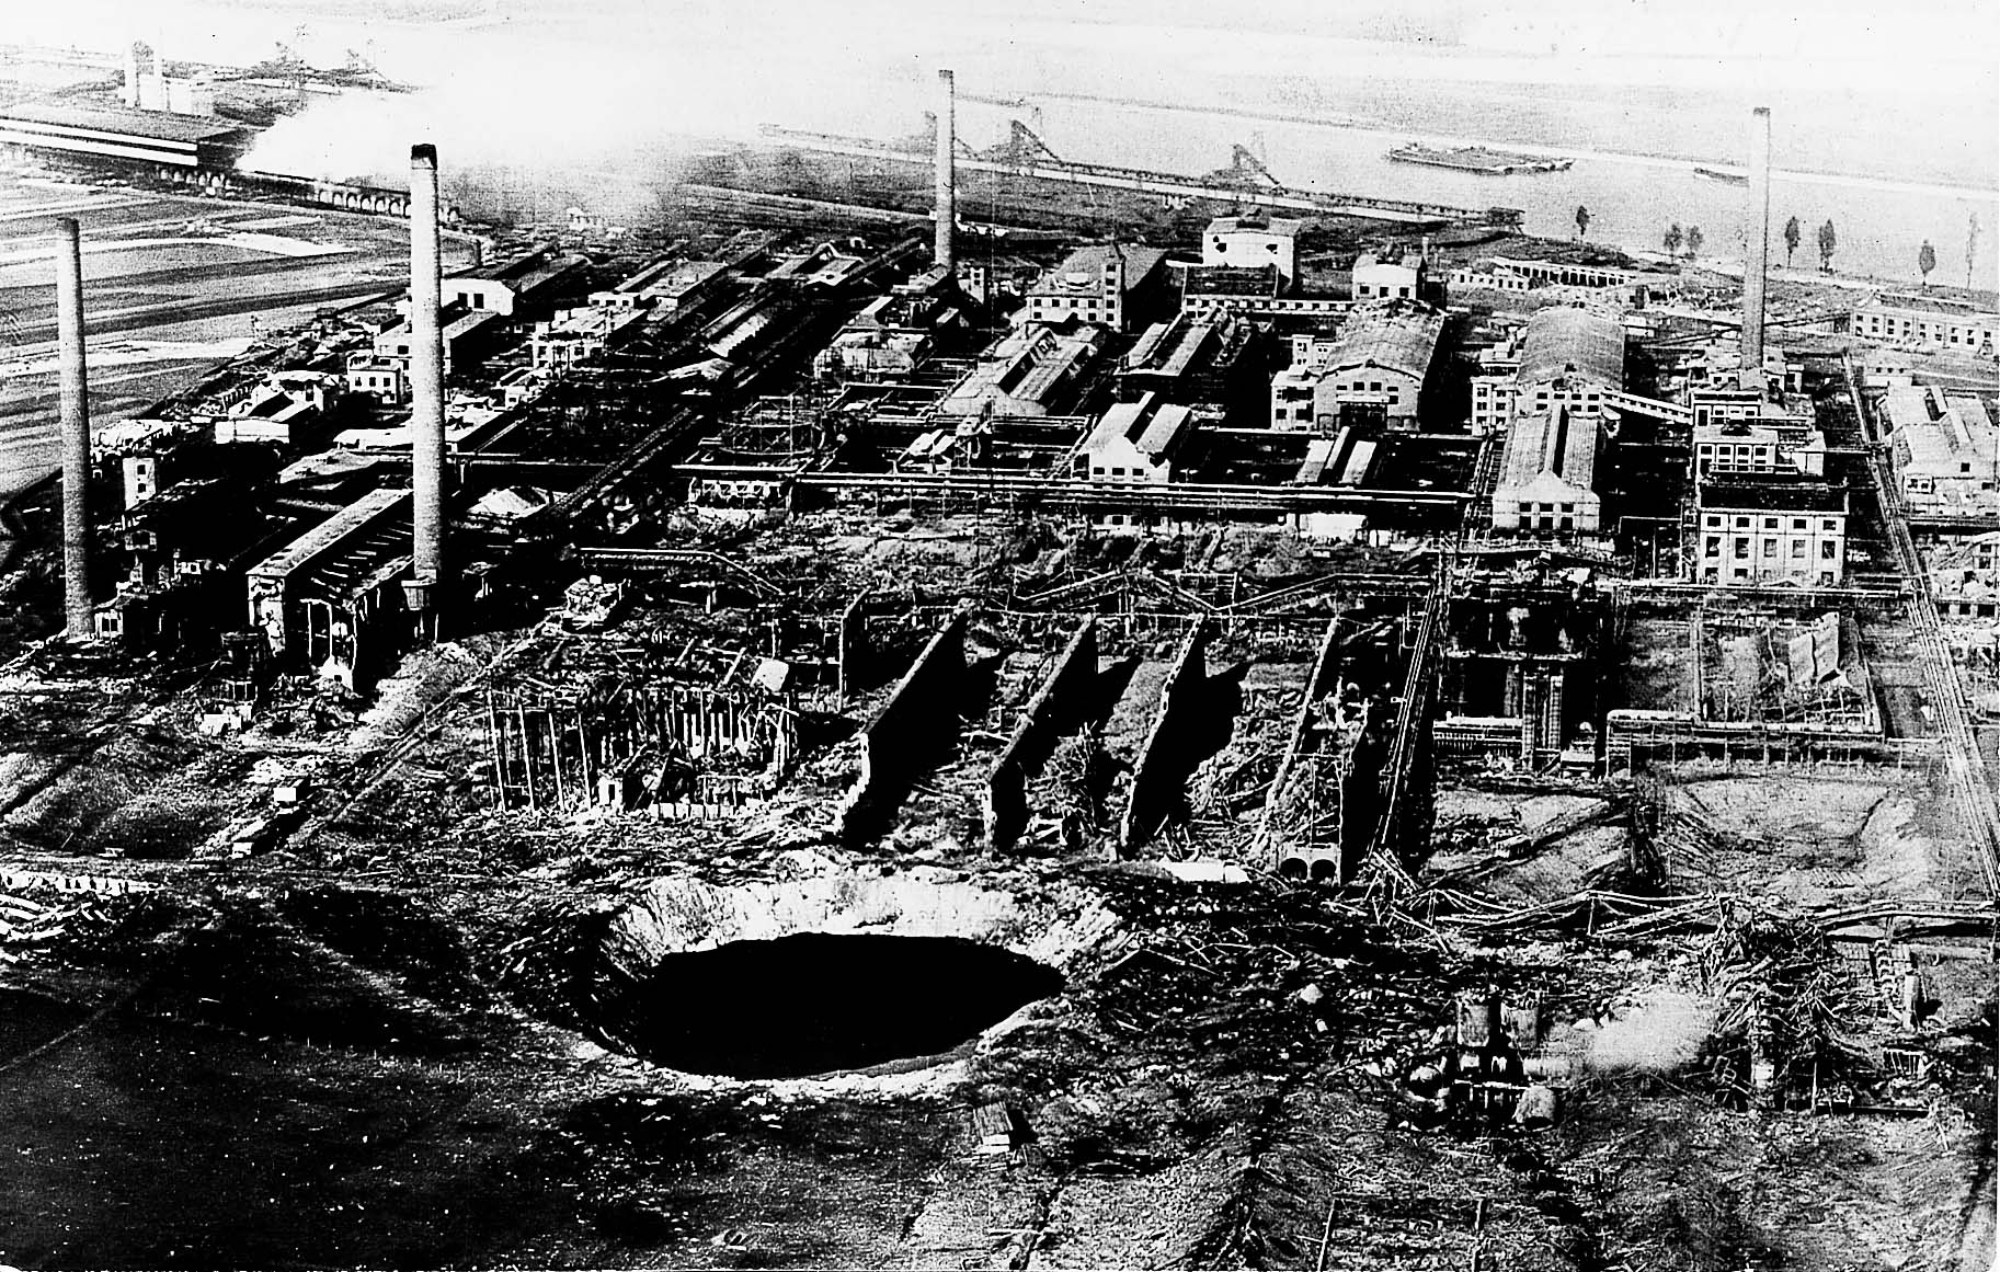 černobílý snímek ukazuje letecký pohled na továrnu s obrovským kráterem v popředí